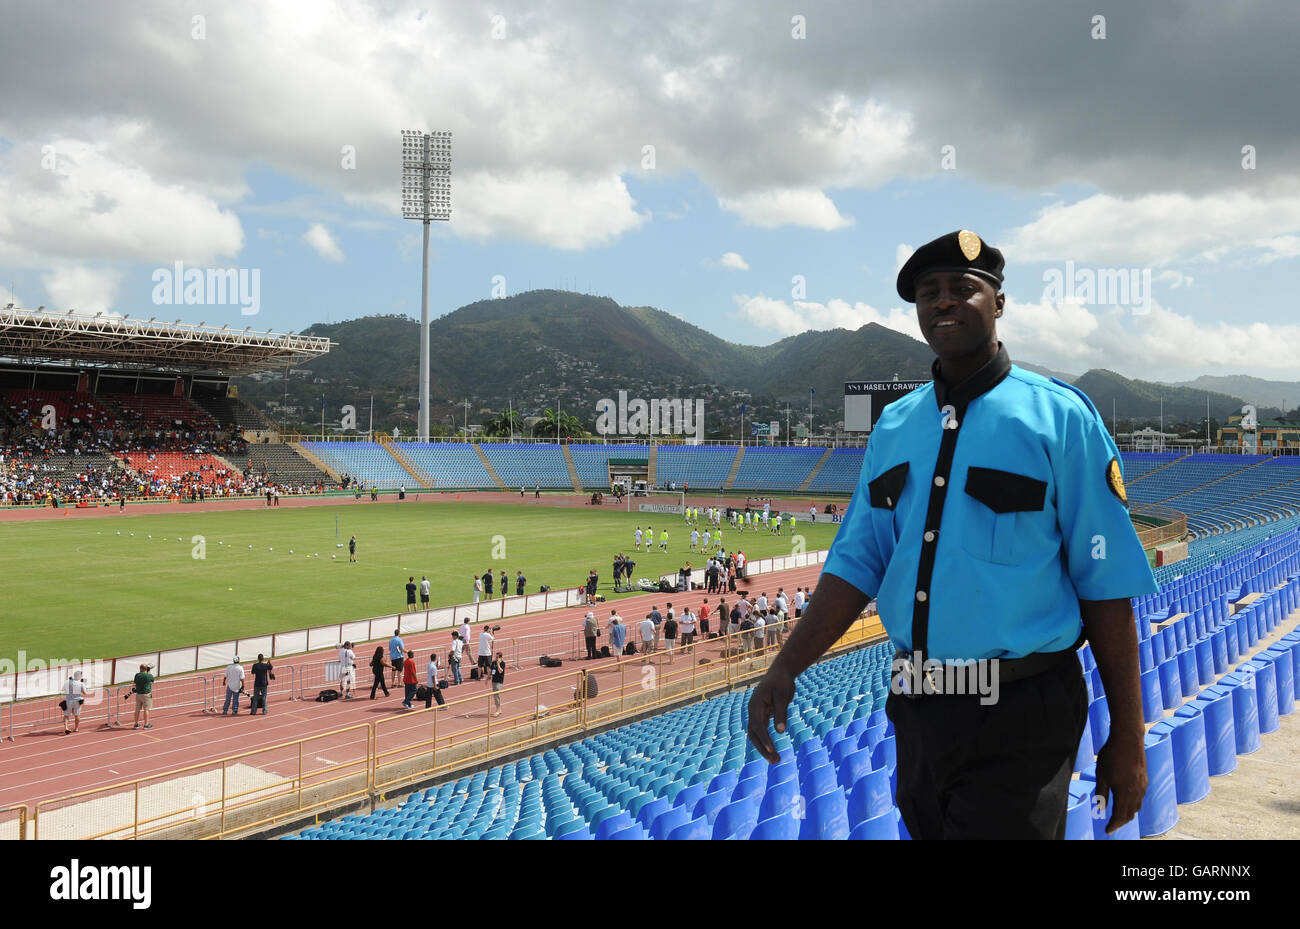 Un agent de sécurité se promène dans le stade Hasely Crawford lors de la séance d'entraînement en Angleterre à Port of Spain, Trinidad. Banque D'Images